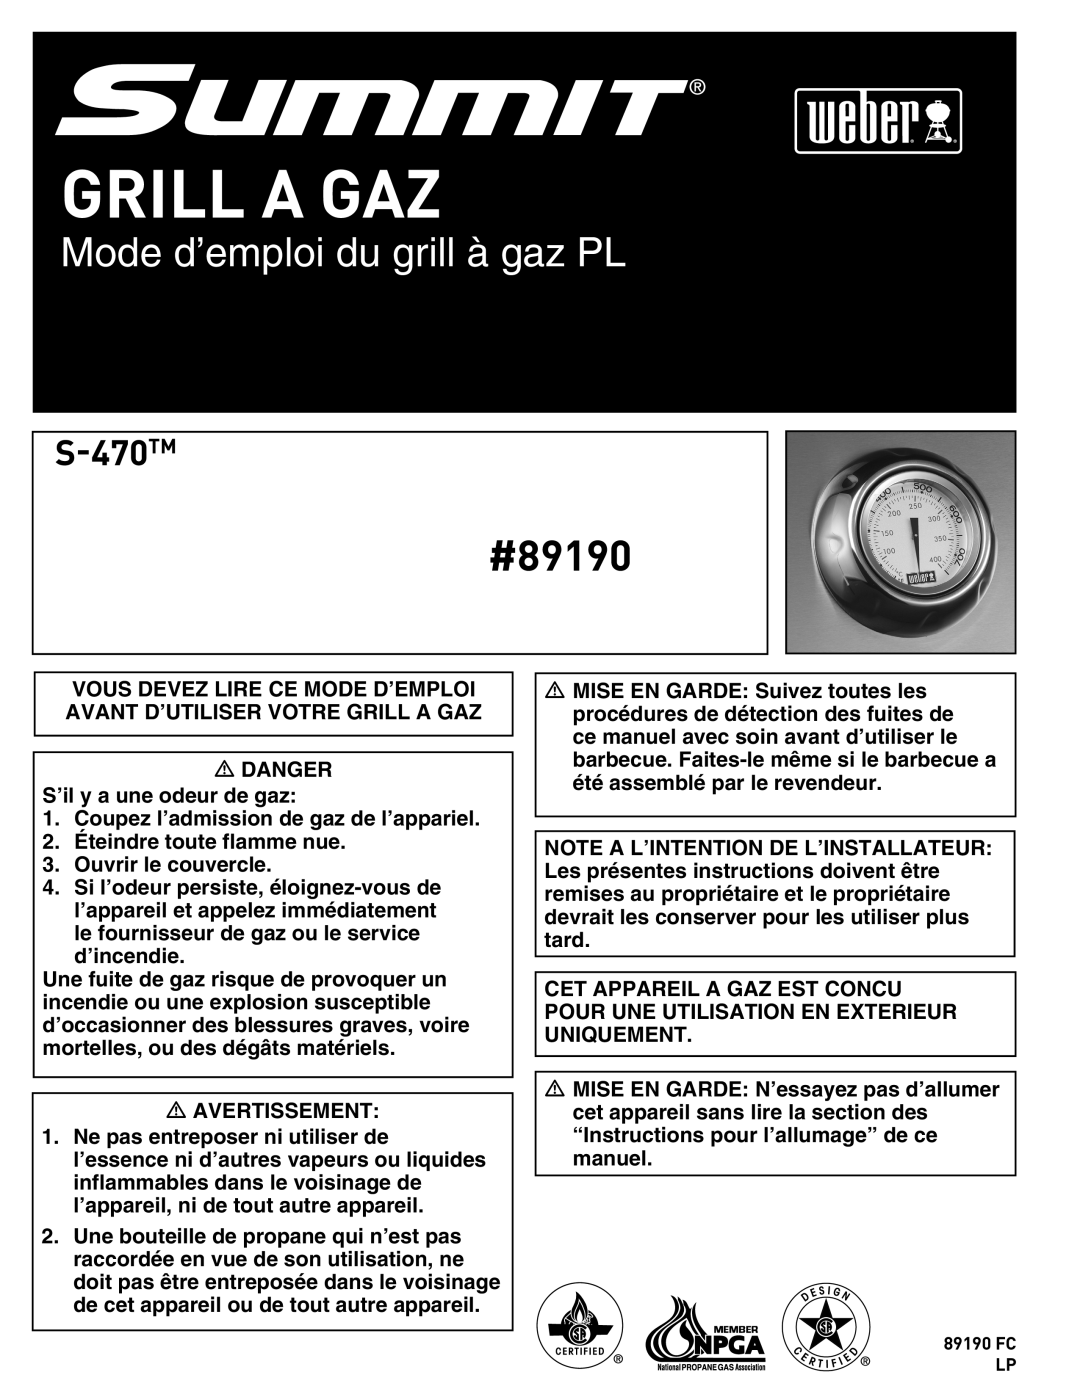 Summit manual Grill A Gaz, Mode d’emploi du grill à gaz PL, #89190, S-470TM 